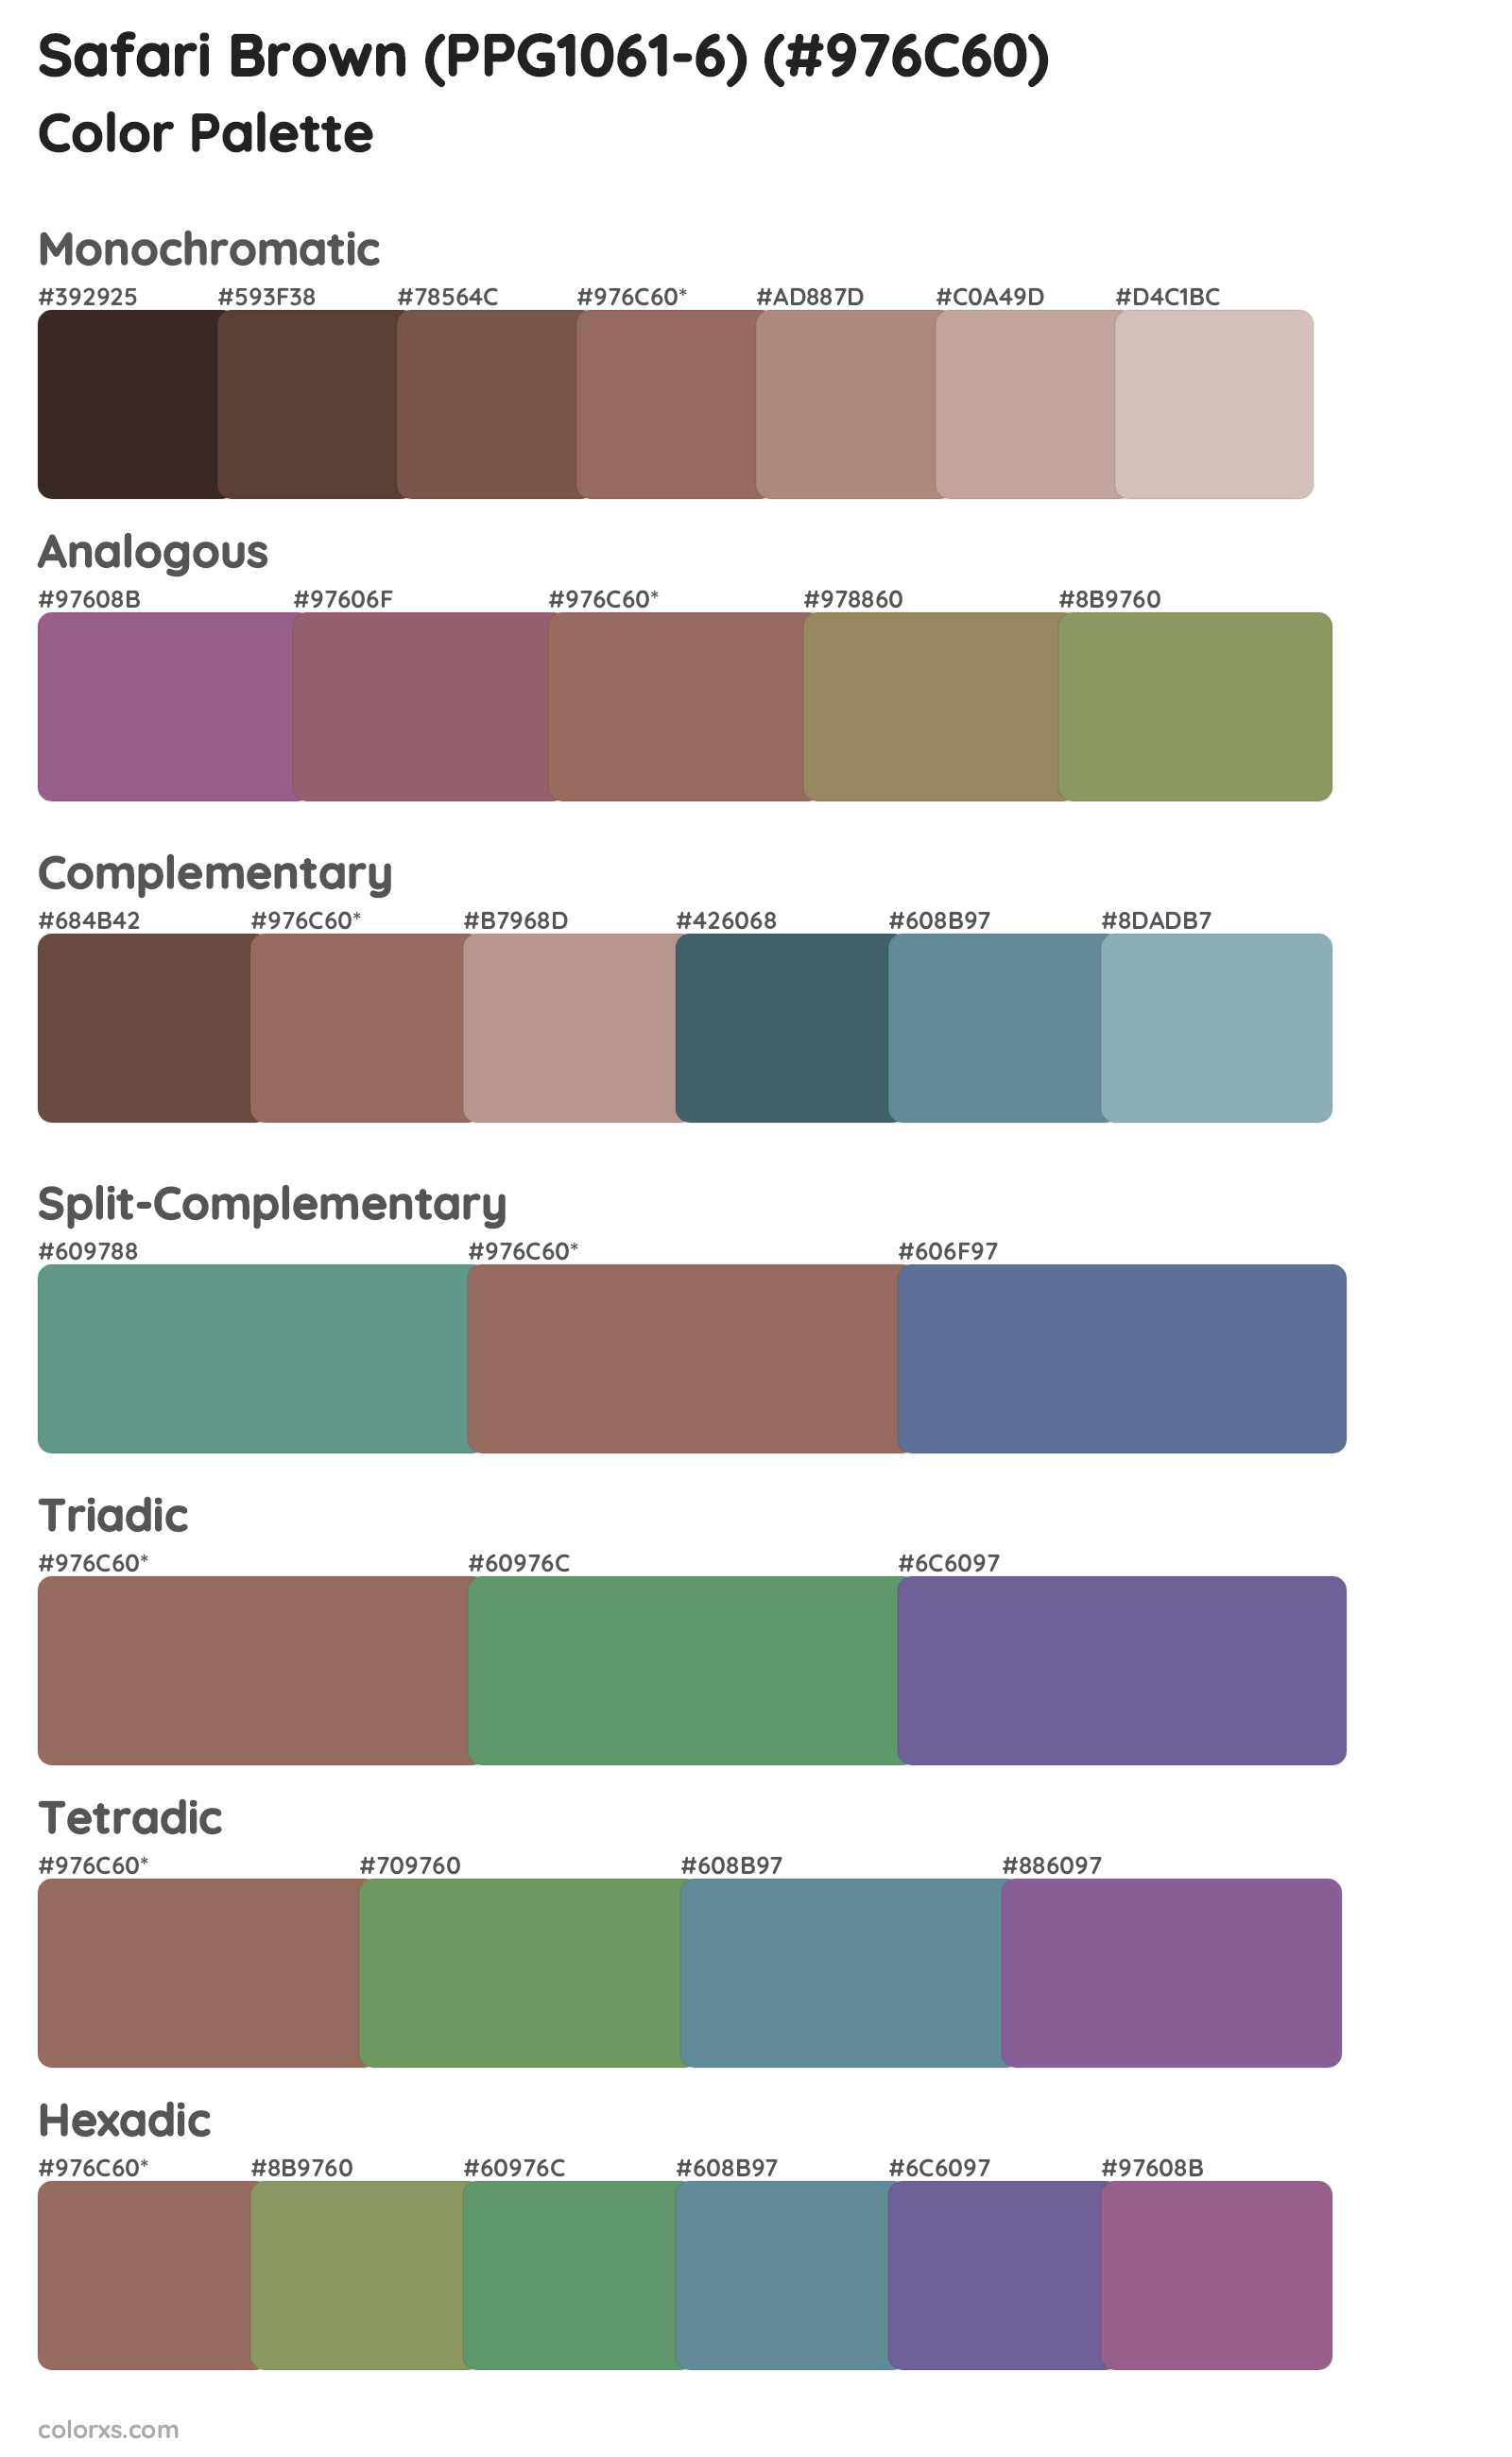 Safari Brown (PPG1061-6) Color Scheme Palettes